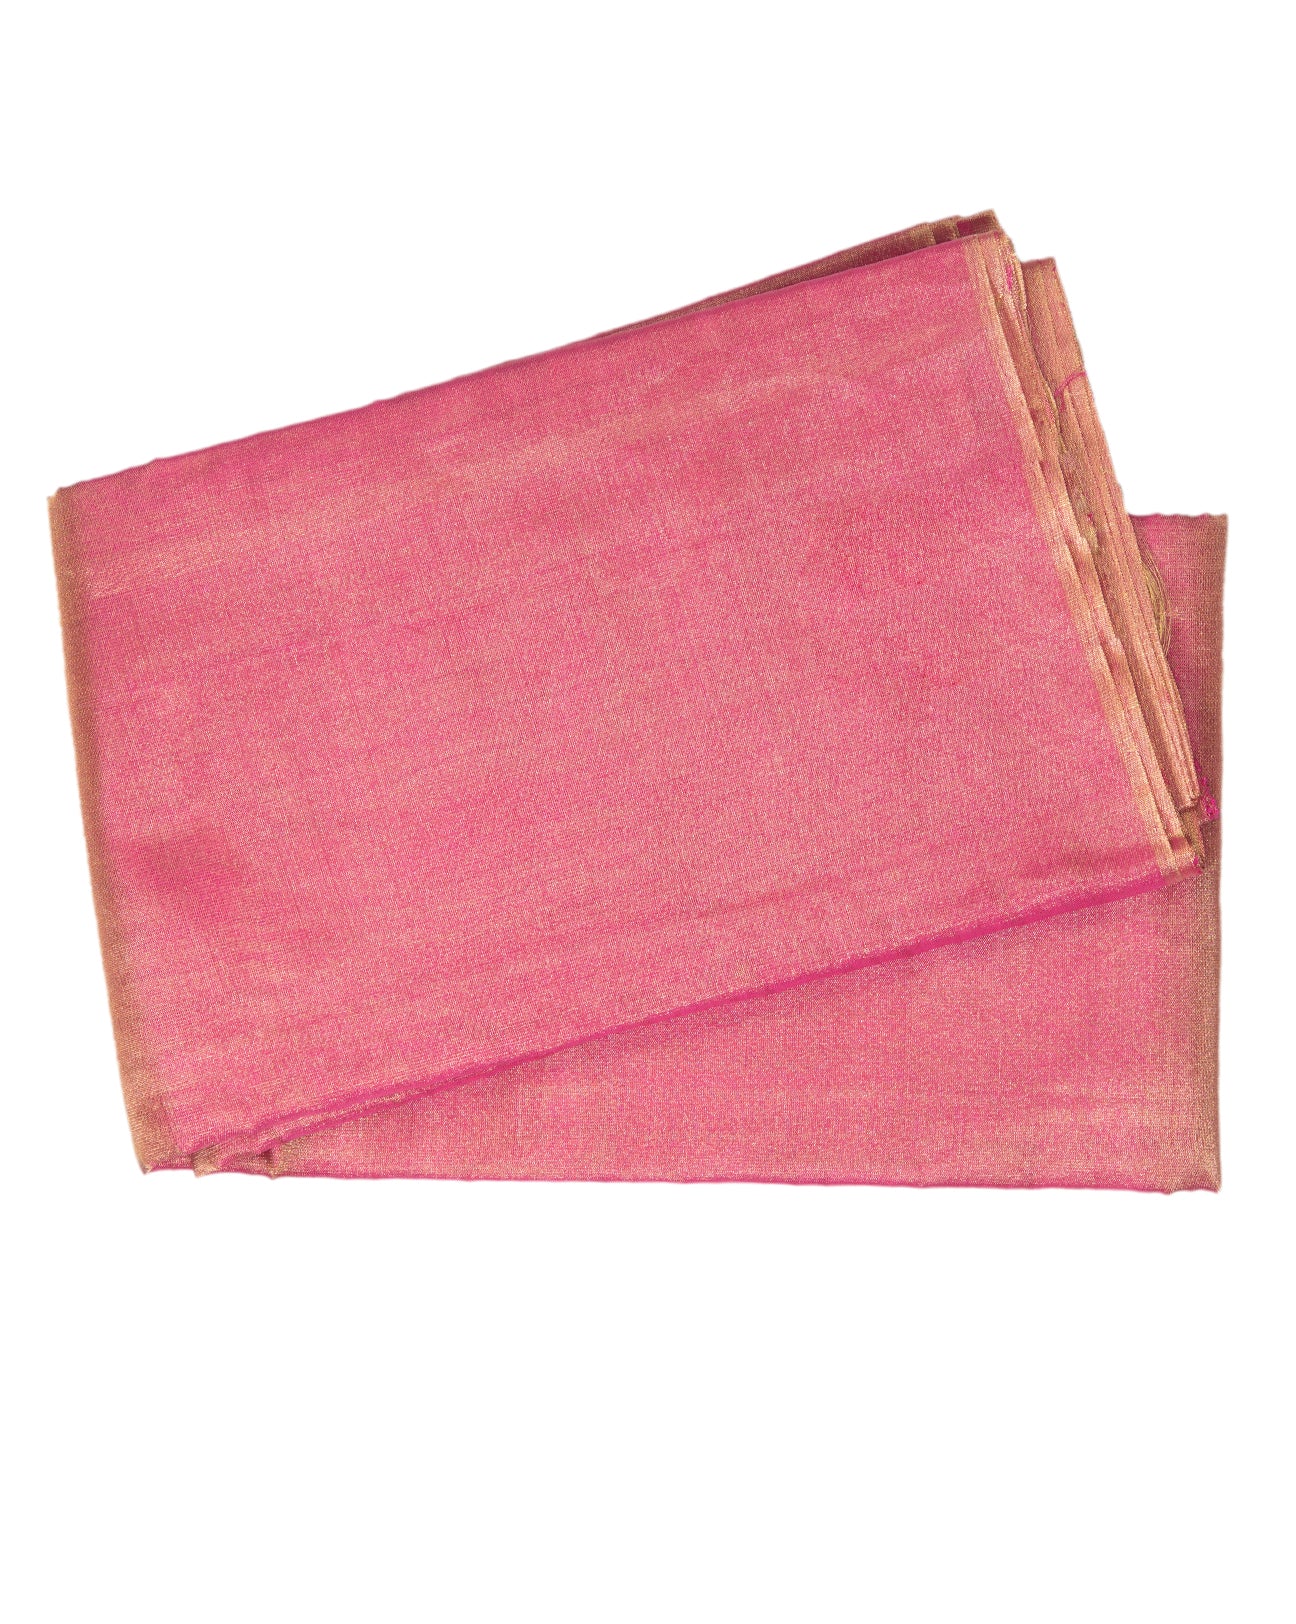 Golden Pink Tissue Saree